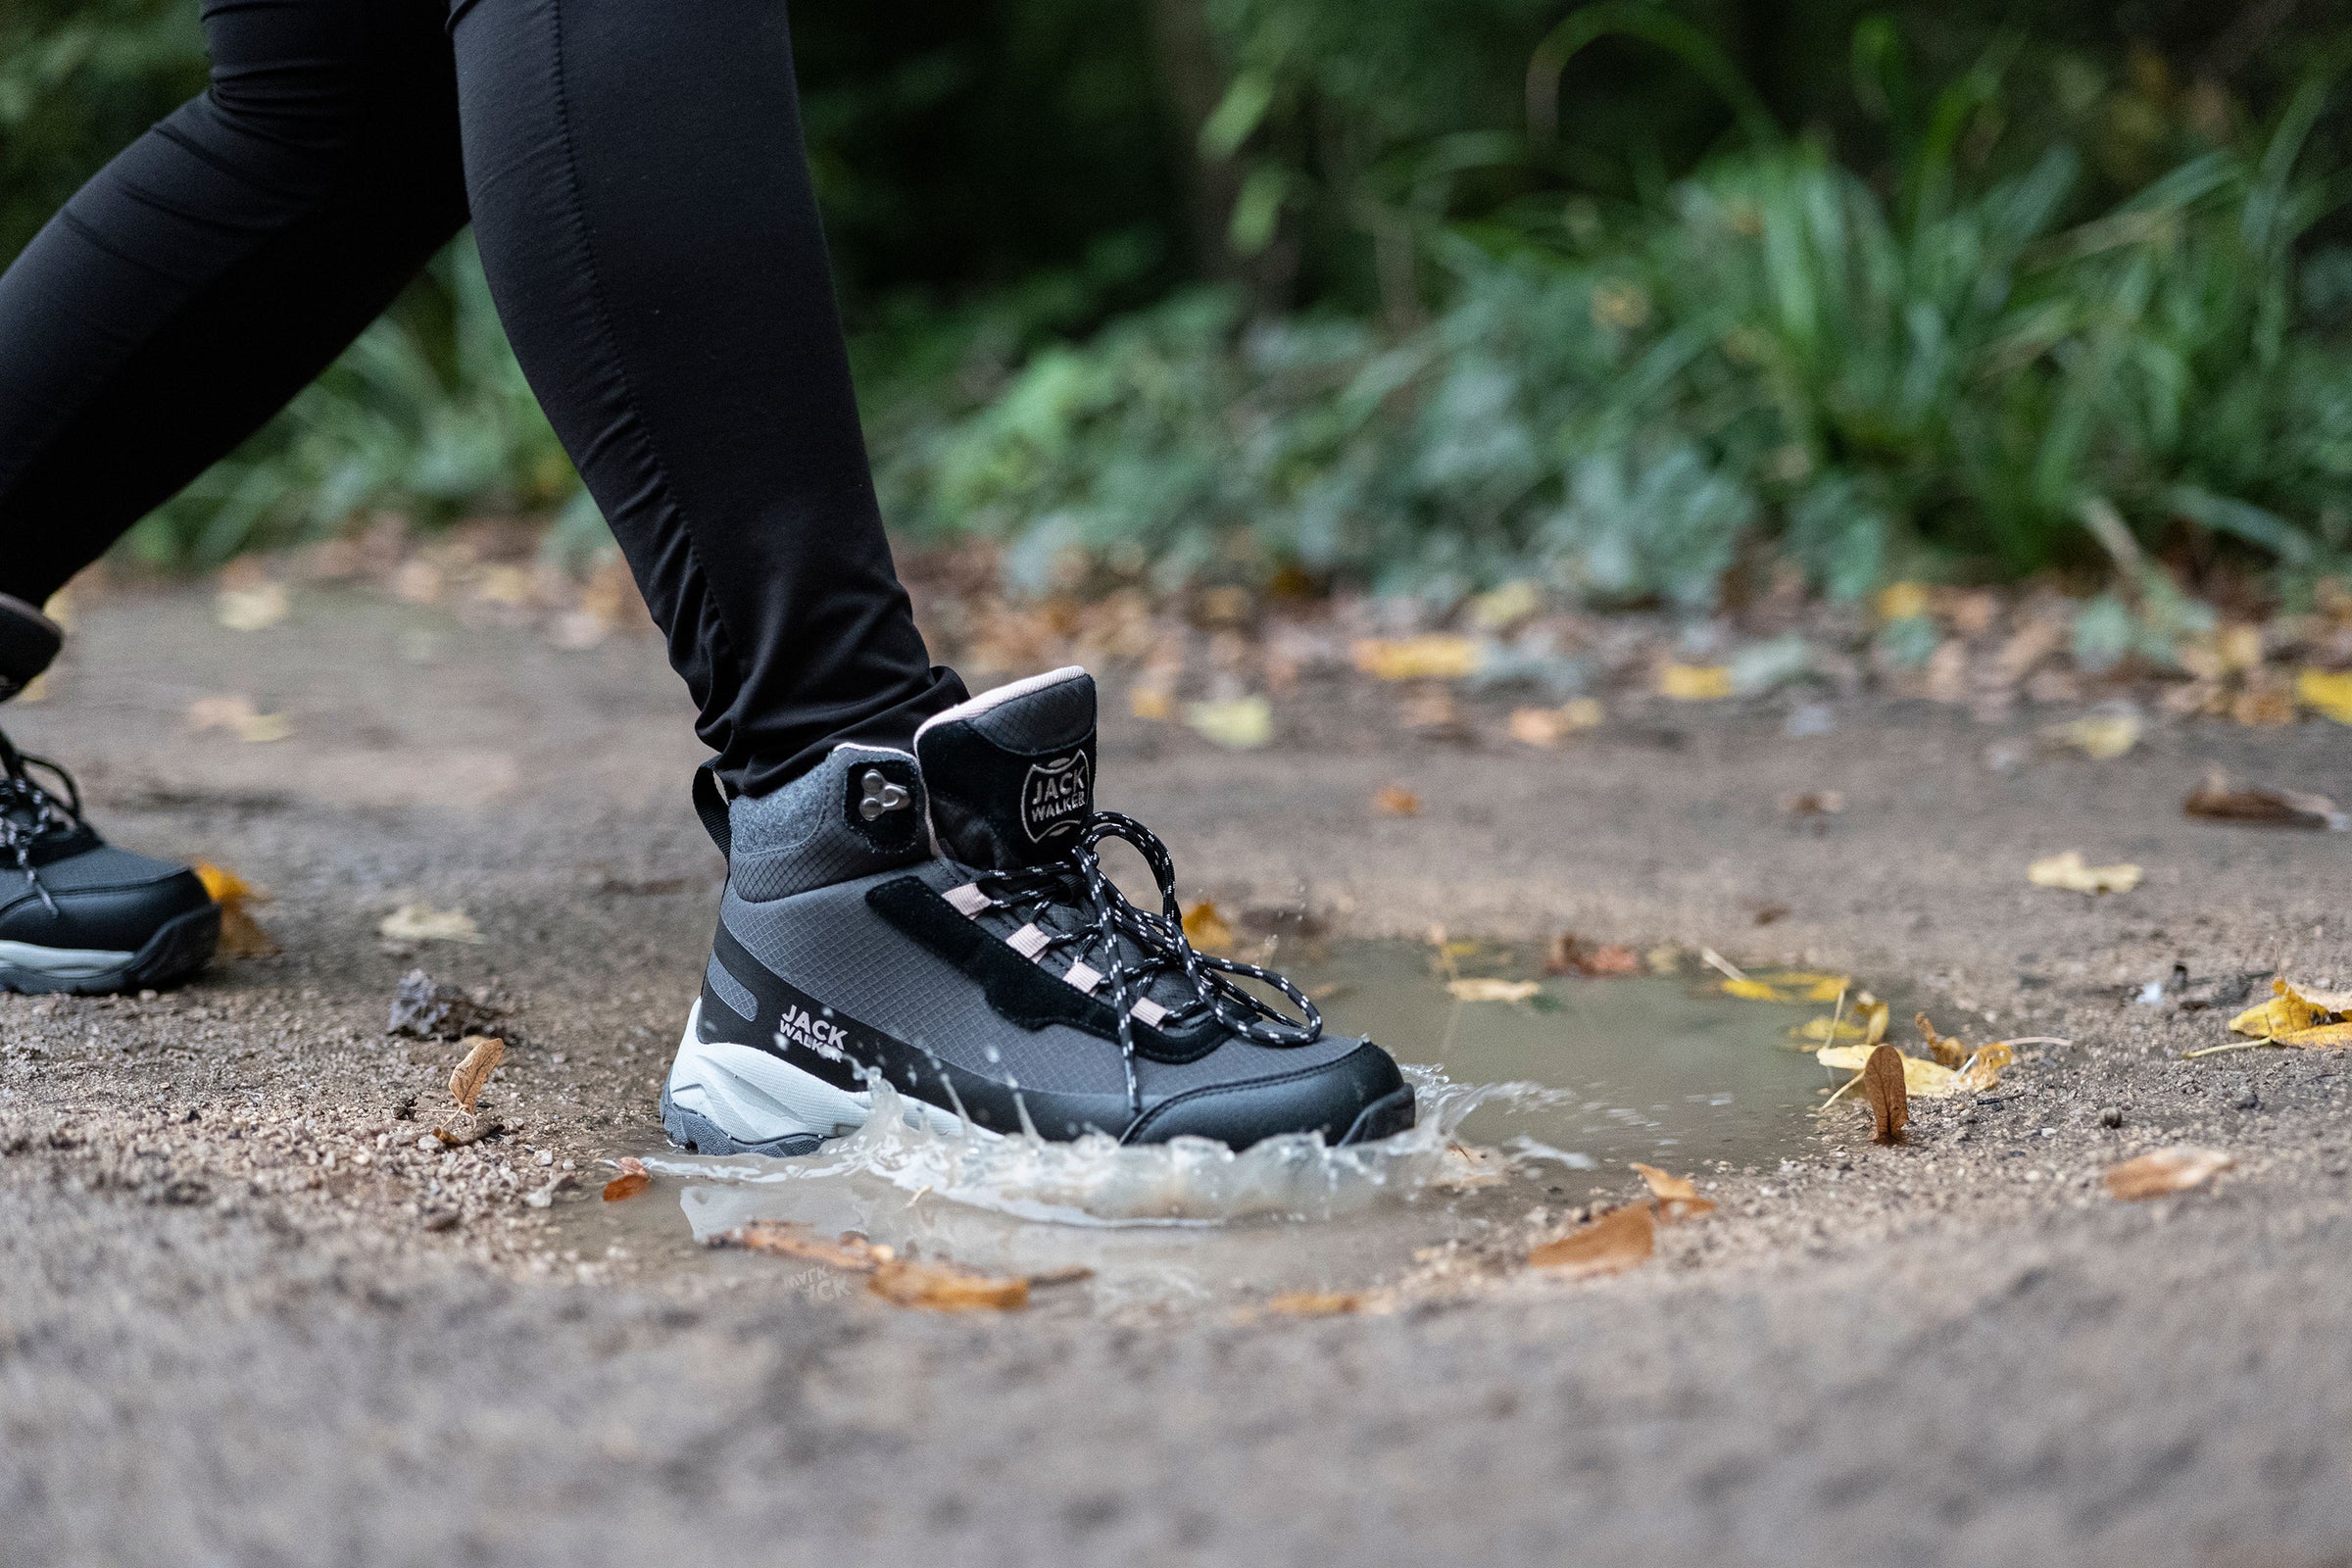 Women Waterproof Hiking Boots Lightweight Trekking Walking Pink JW4005 –  Jack Walker